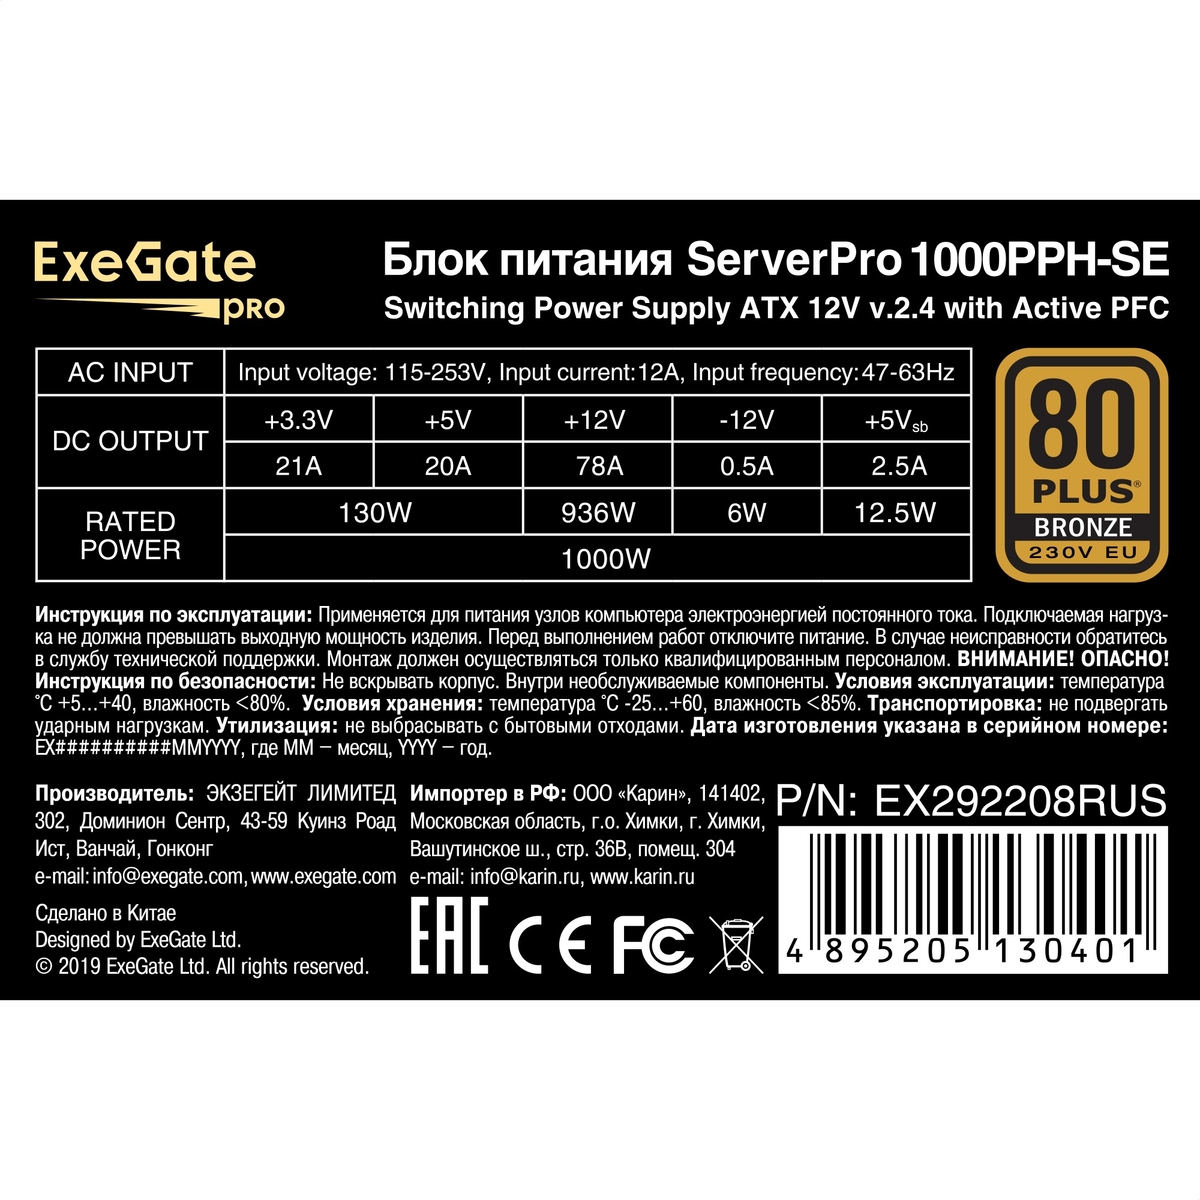   1000W ExeGate ServerPRO 80 PLUS<sup></sup> Bronze 1000PPH-SE